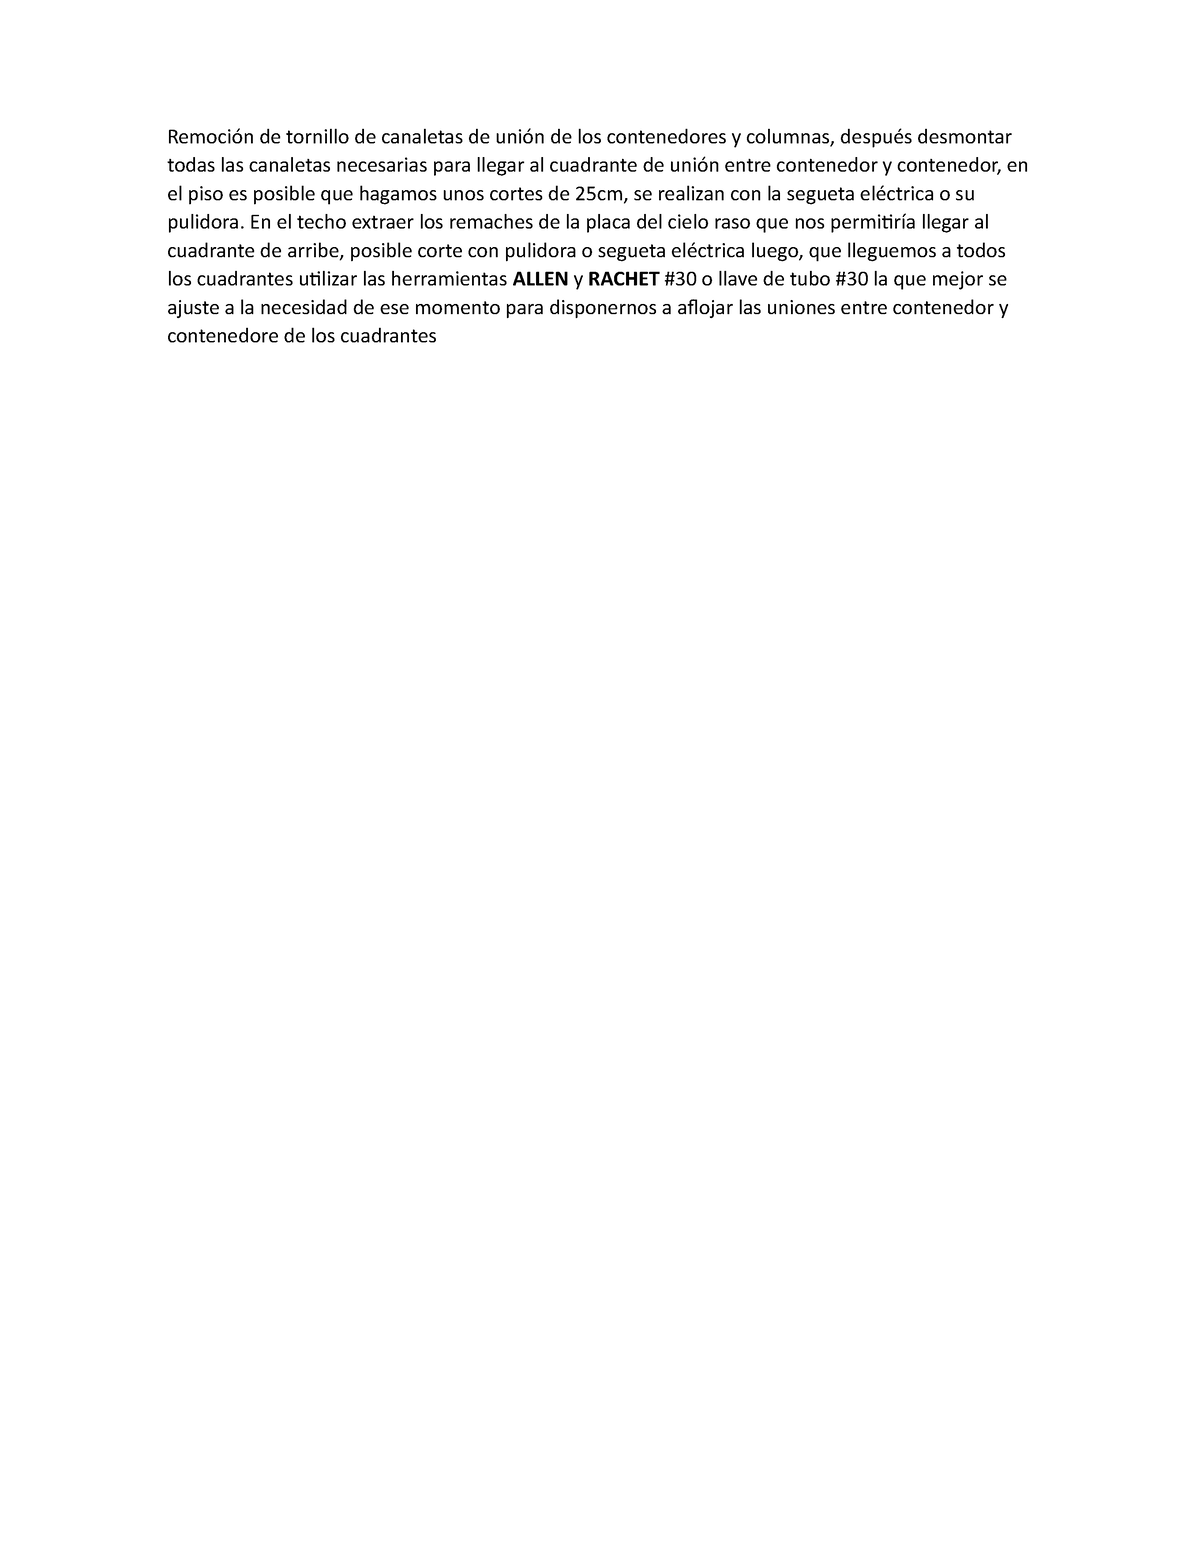 Procedimiento Contenedores - Remoción de tornillo de canaletas de unión ...